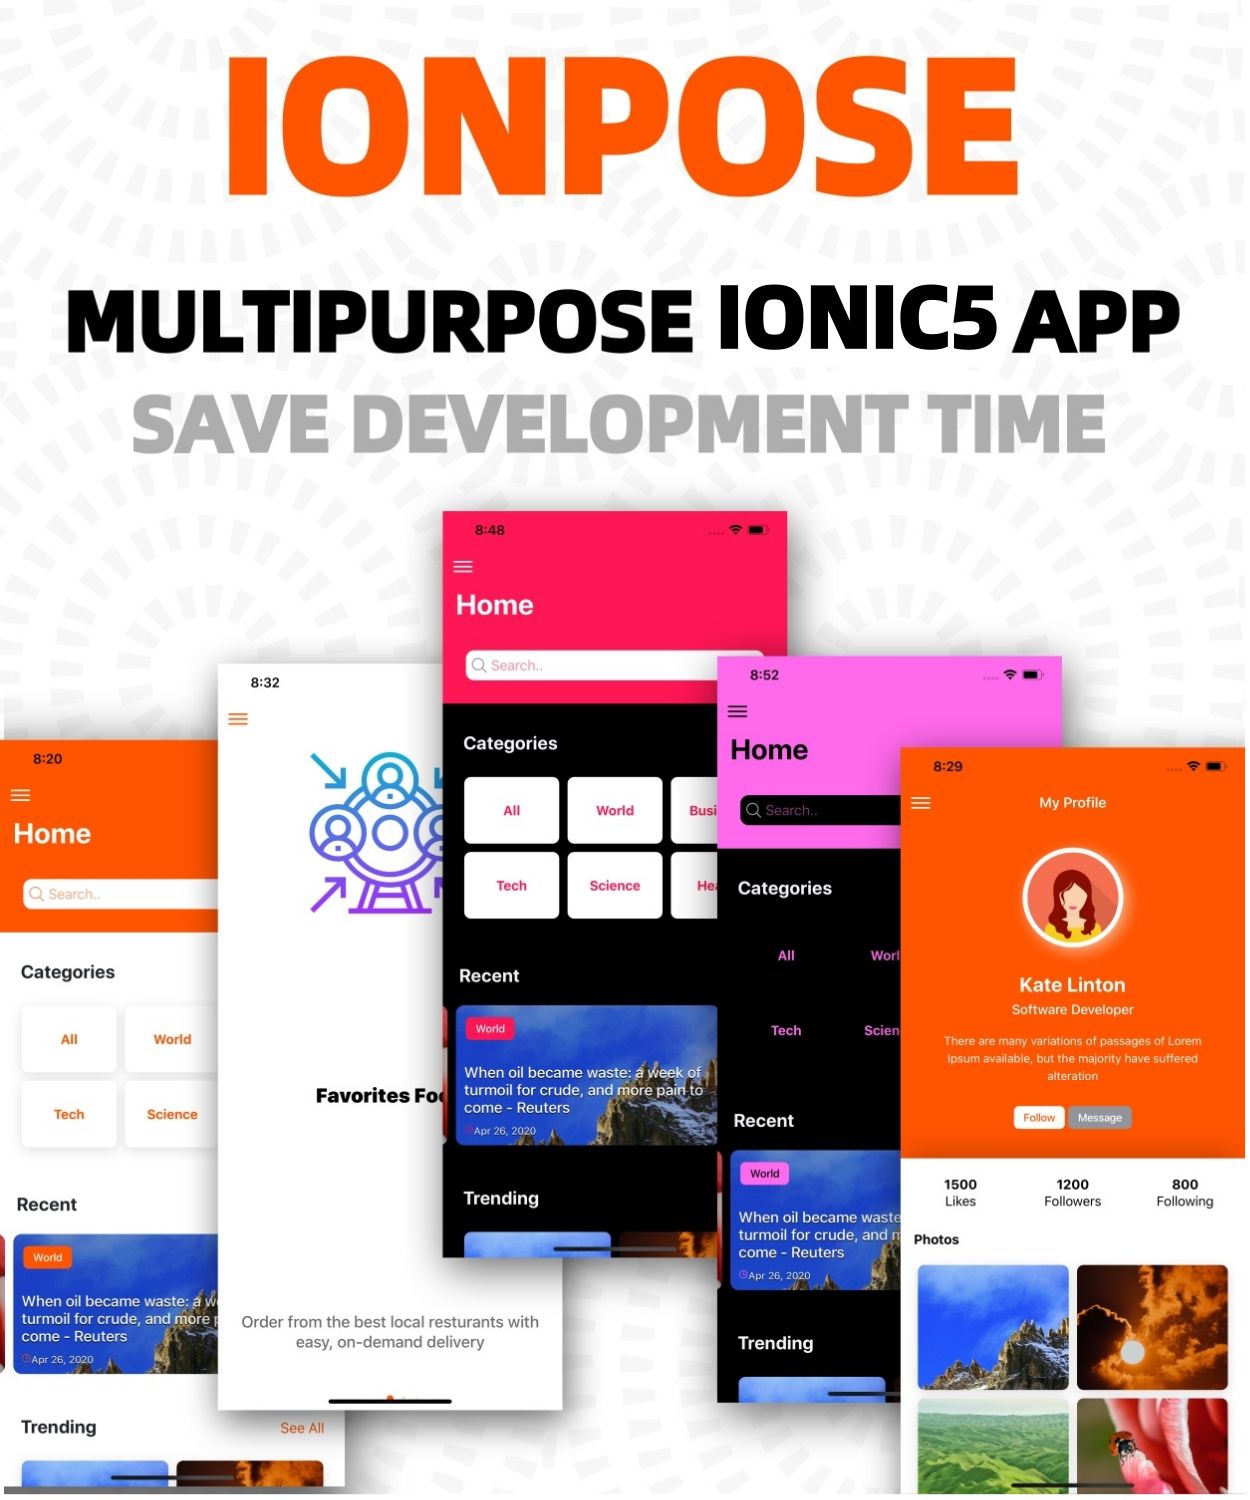 IonPose - Multipurpose Ionic5 App (RTL + Dark Mode + 15 Theme Colors + Multi-Language Support) - 3